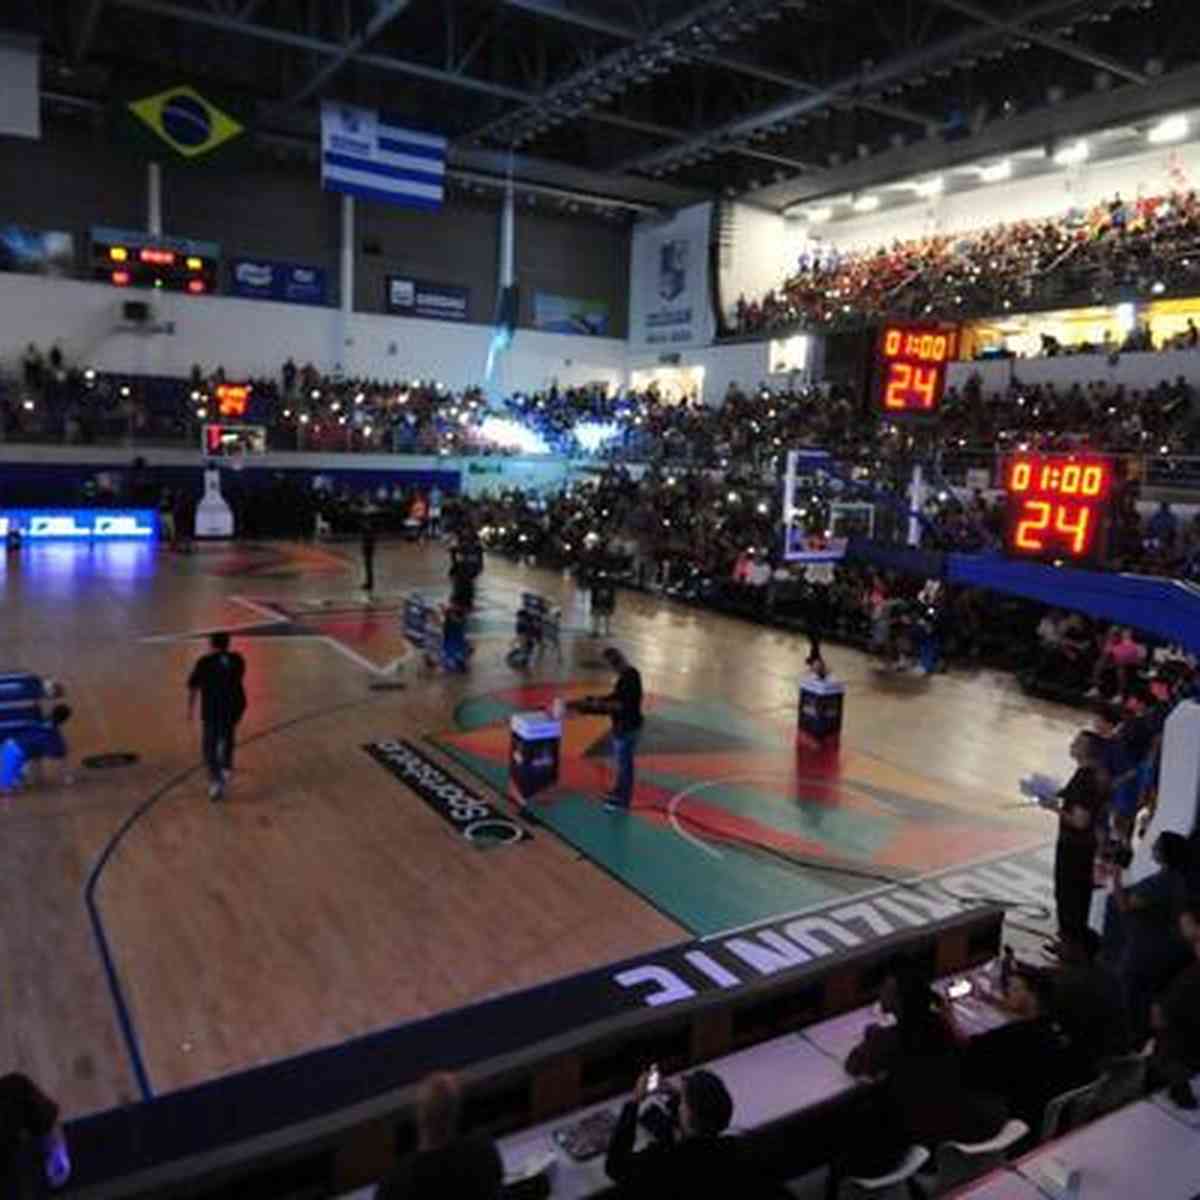 Jogo das Estrelas da Liga Feminina de Basquete será na Arena Carioca